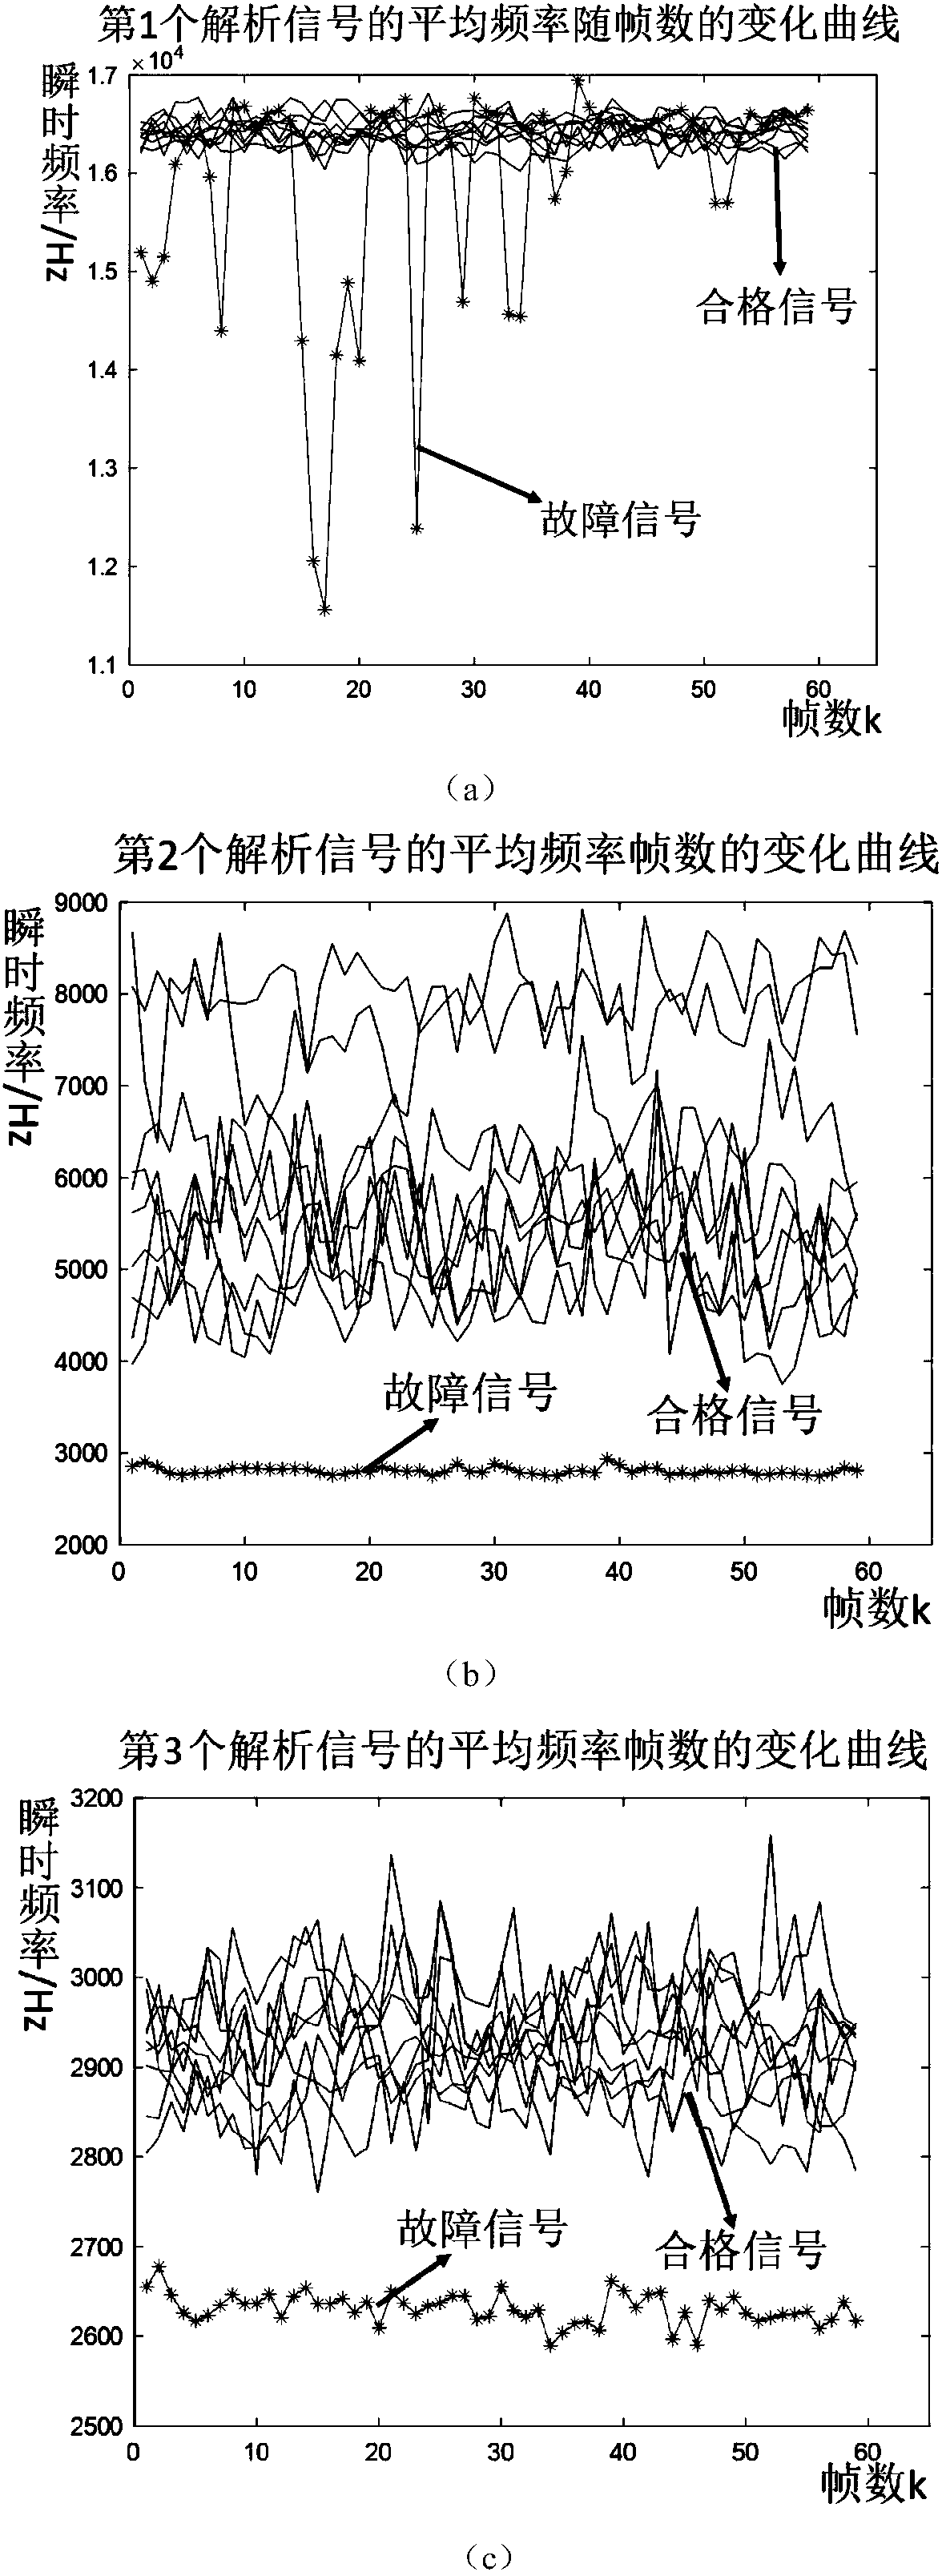 Motor abnormal noise detection method based on Hilbert-Huang transformation